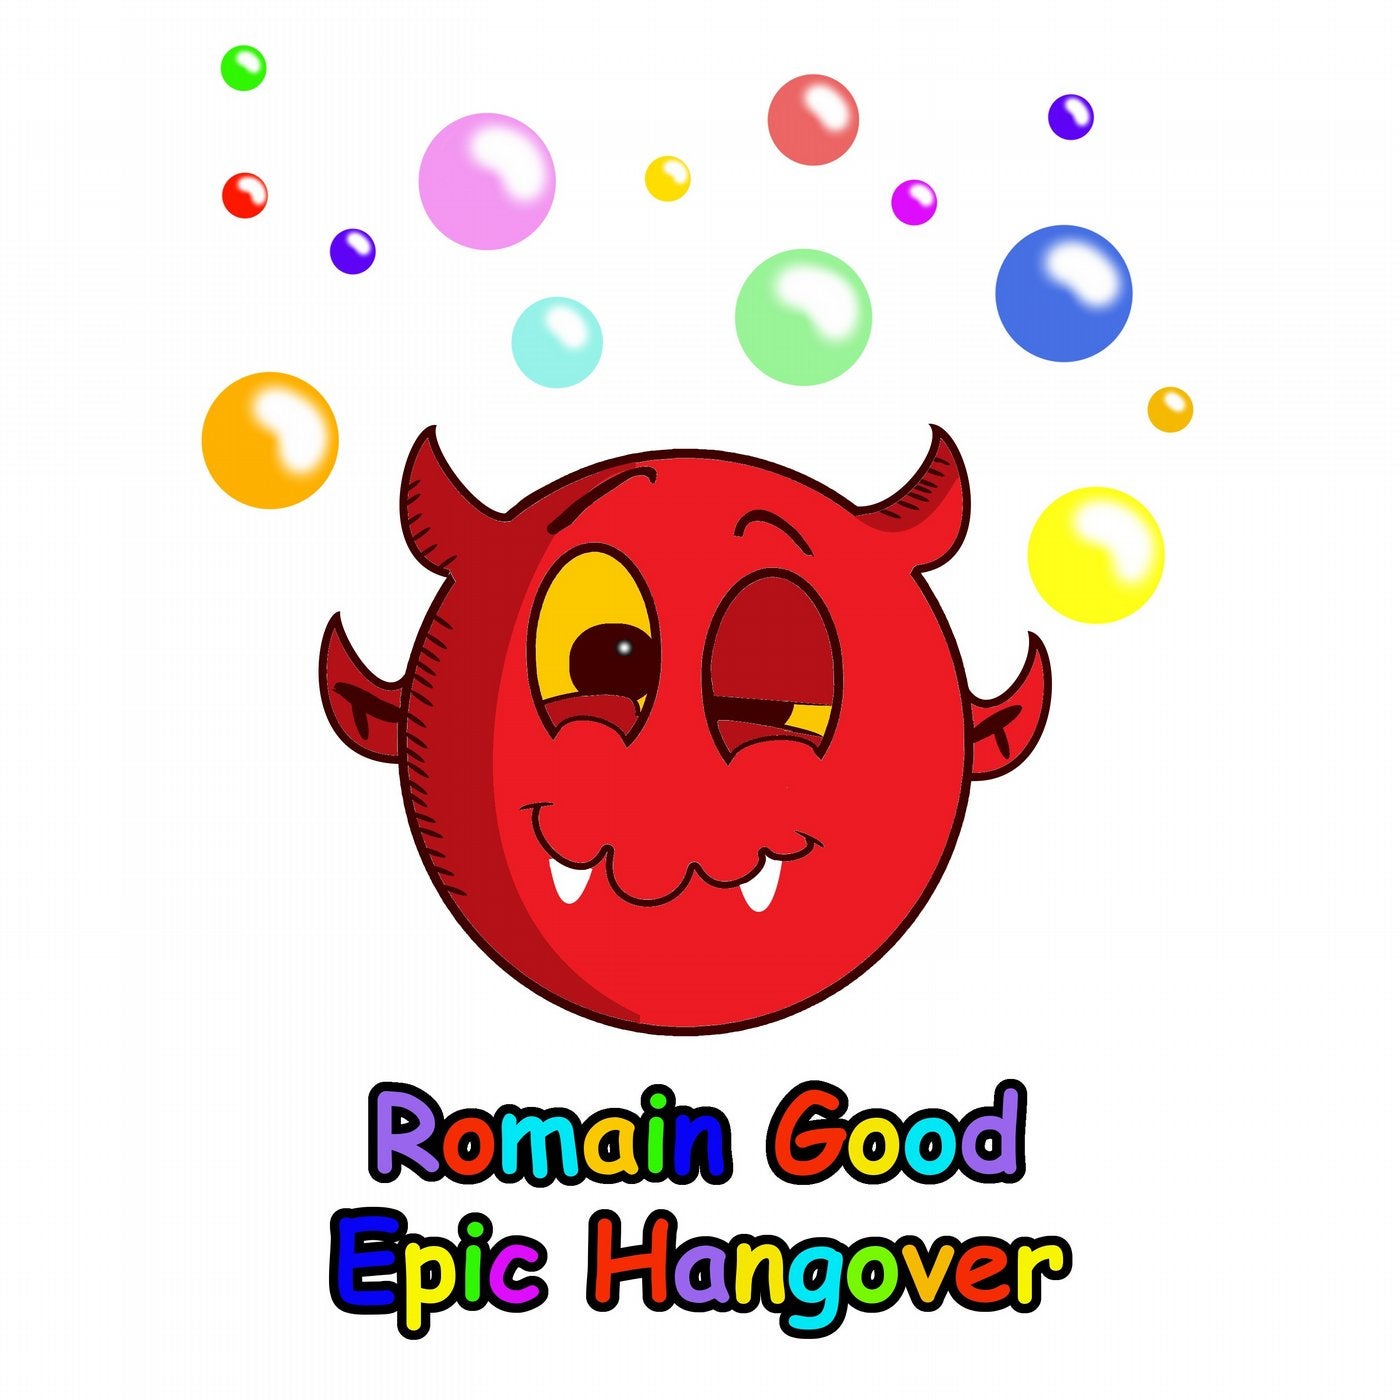 Epic Hangover